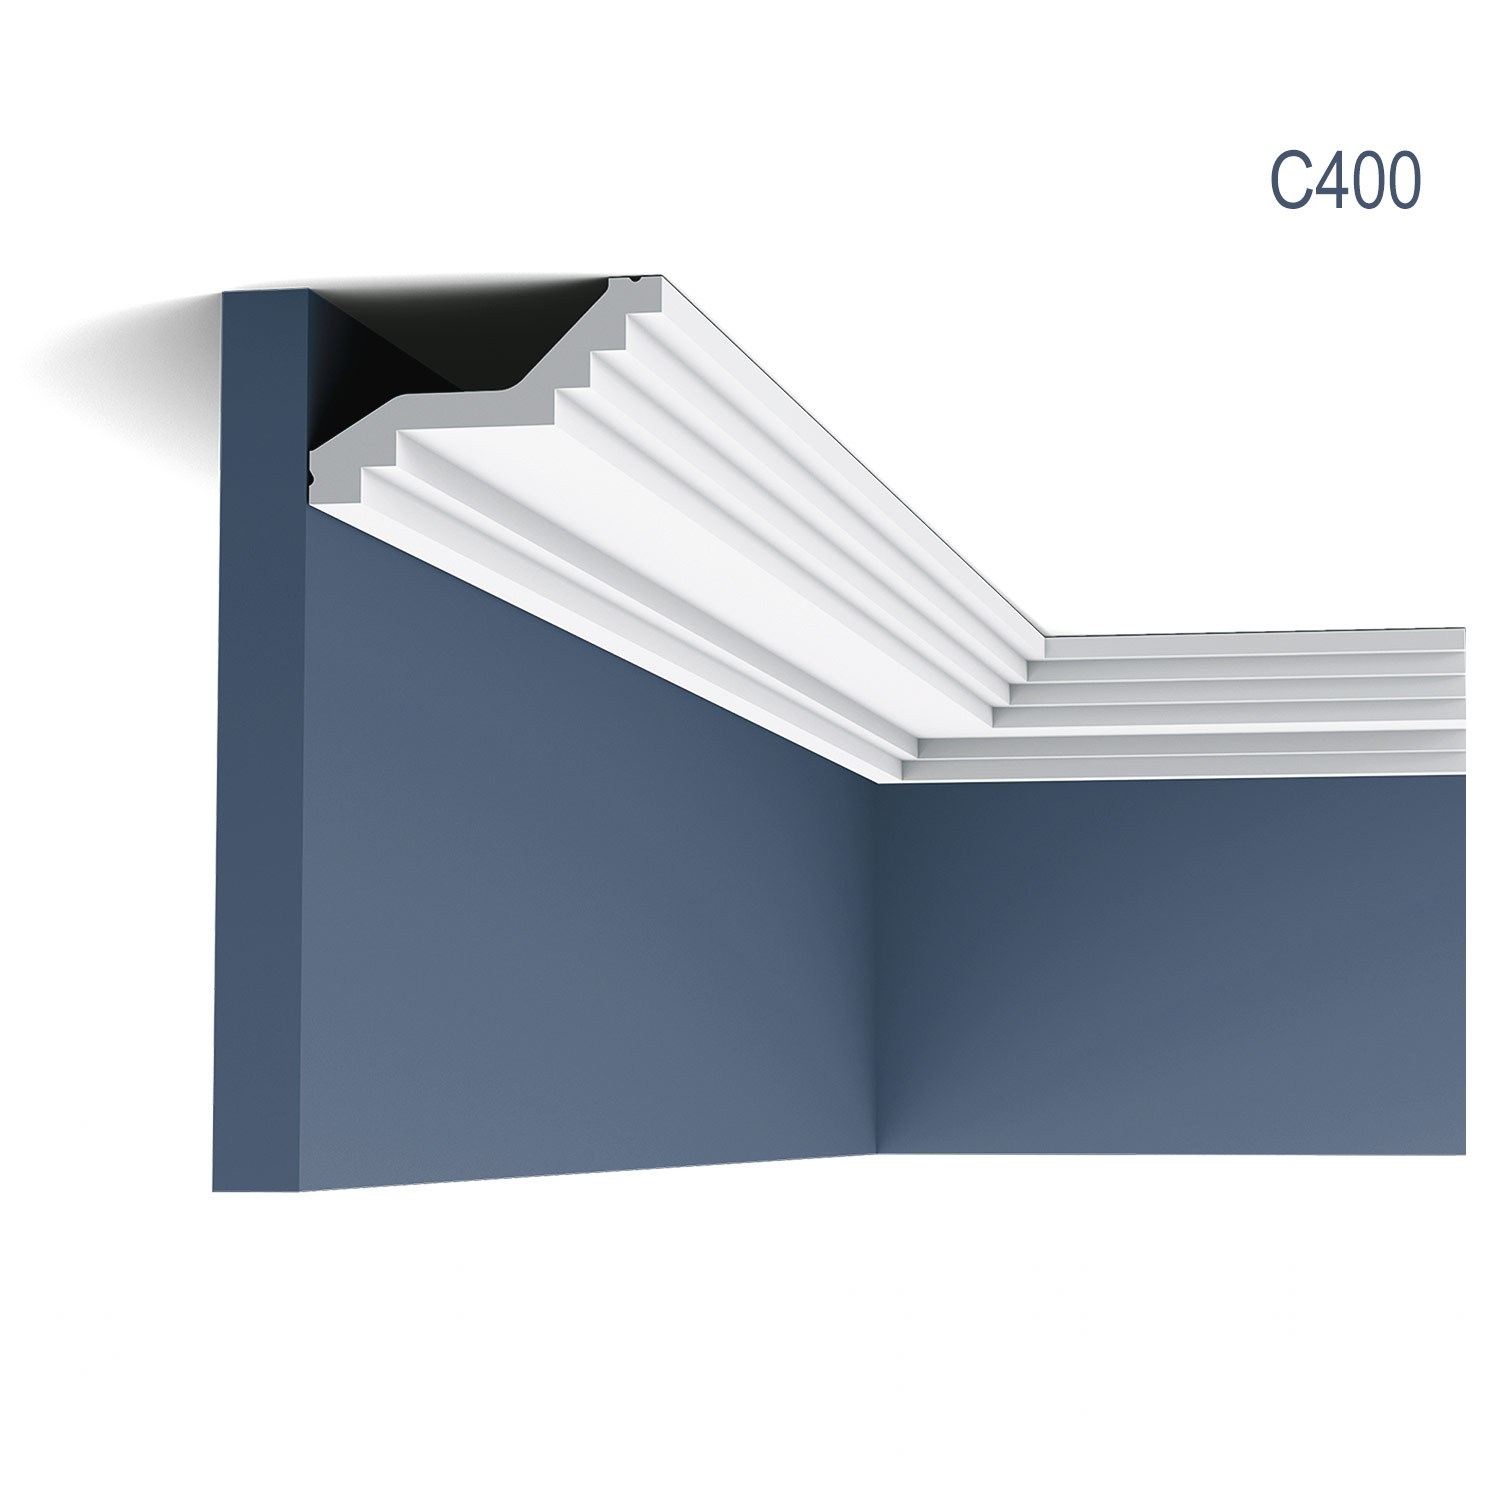 Cornisa C400 pentru tavan, alba, vopsibila, rigida, calitate excelenta, Belgia, din Poliuretan rigid, L 200 x H 6 x L 10 cm